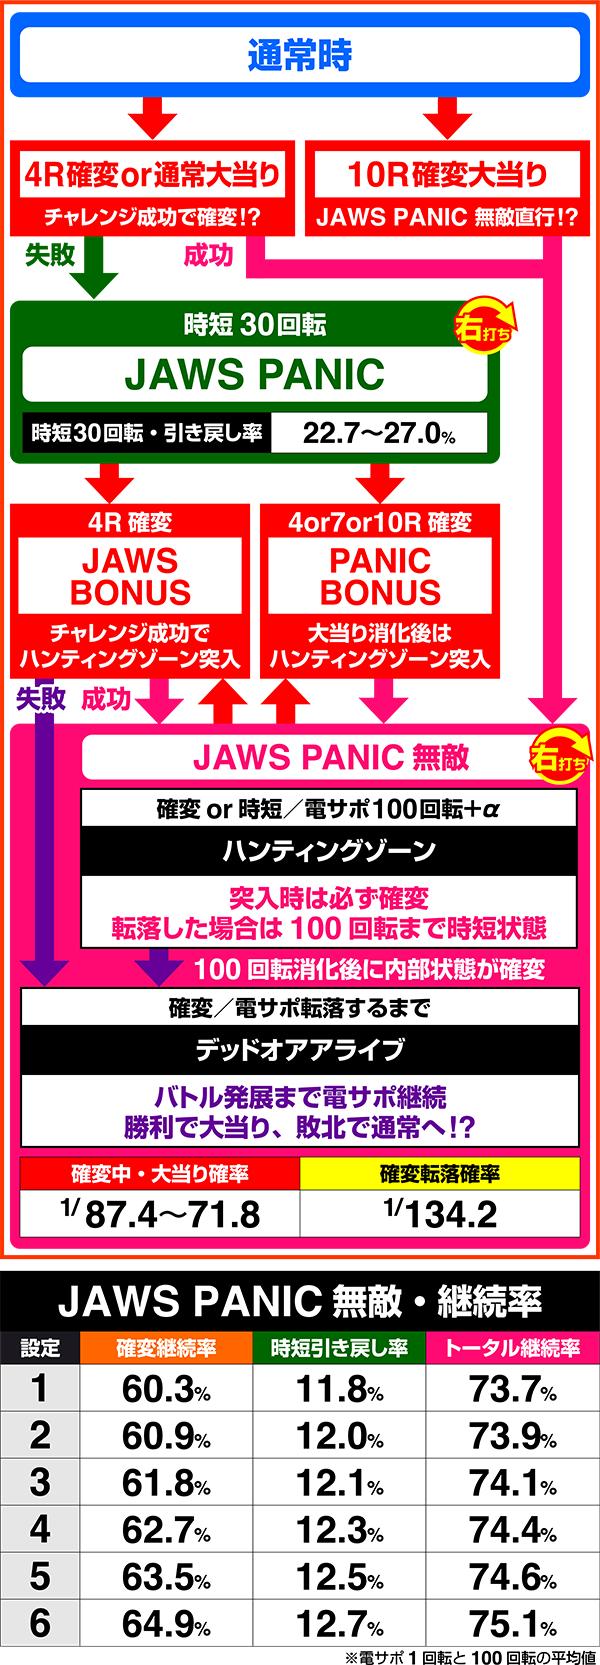 P JAWS再臨-SHARK PANIC AGAIN- 1/116〜1/95ver.（パチンコ）のゲームフロー